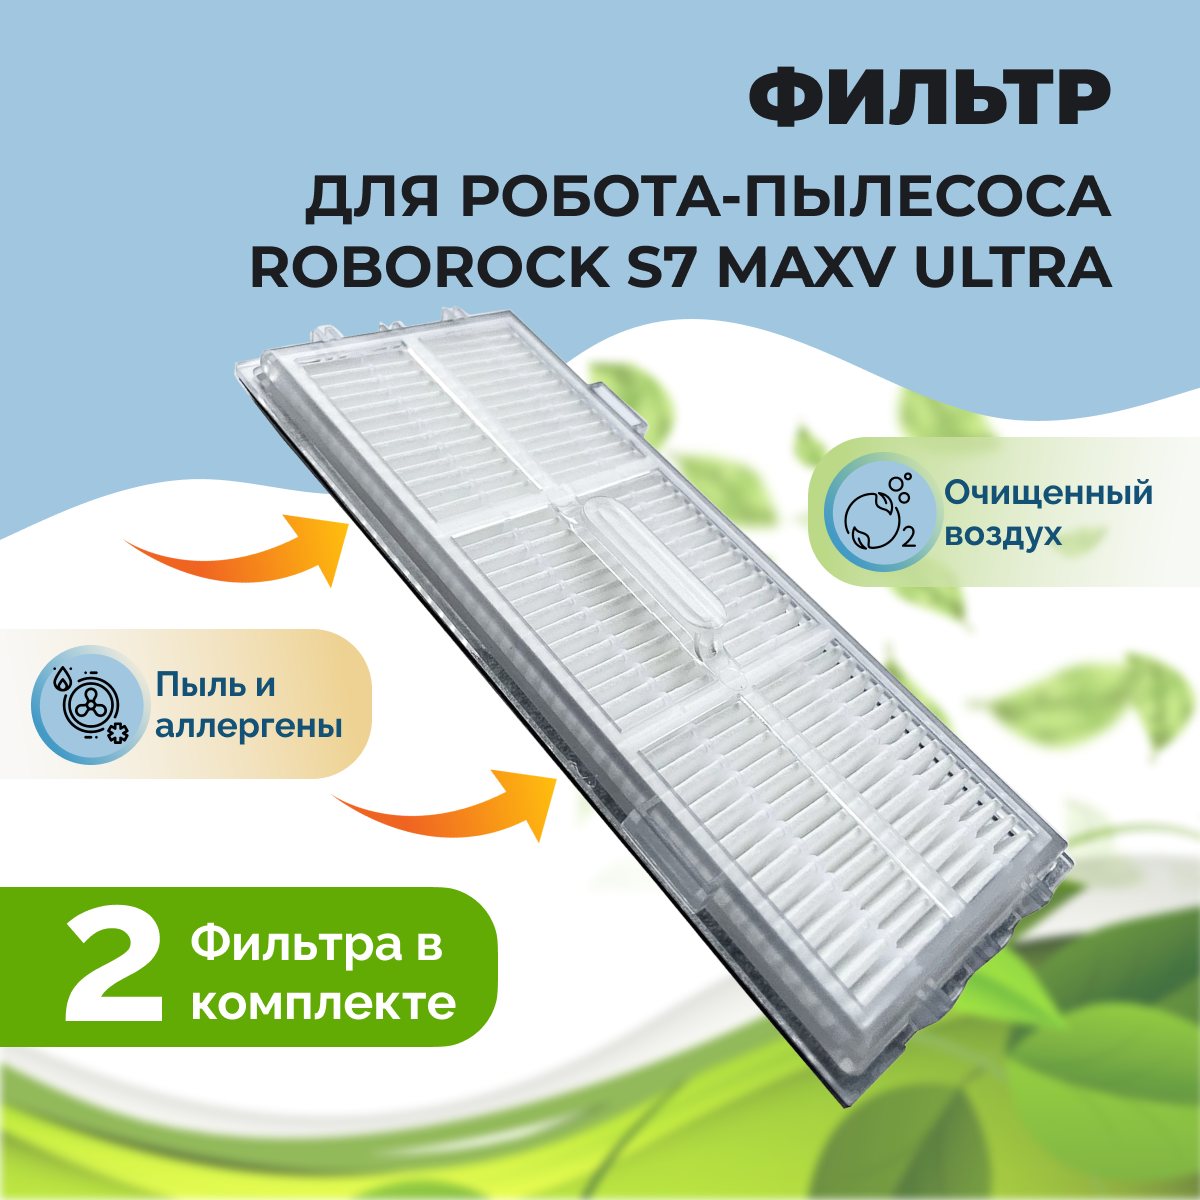 Фильтры для робота-пылесоса Roborock S7 MaxV Ultra, 2 штуки 558134, фото 1